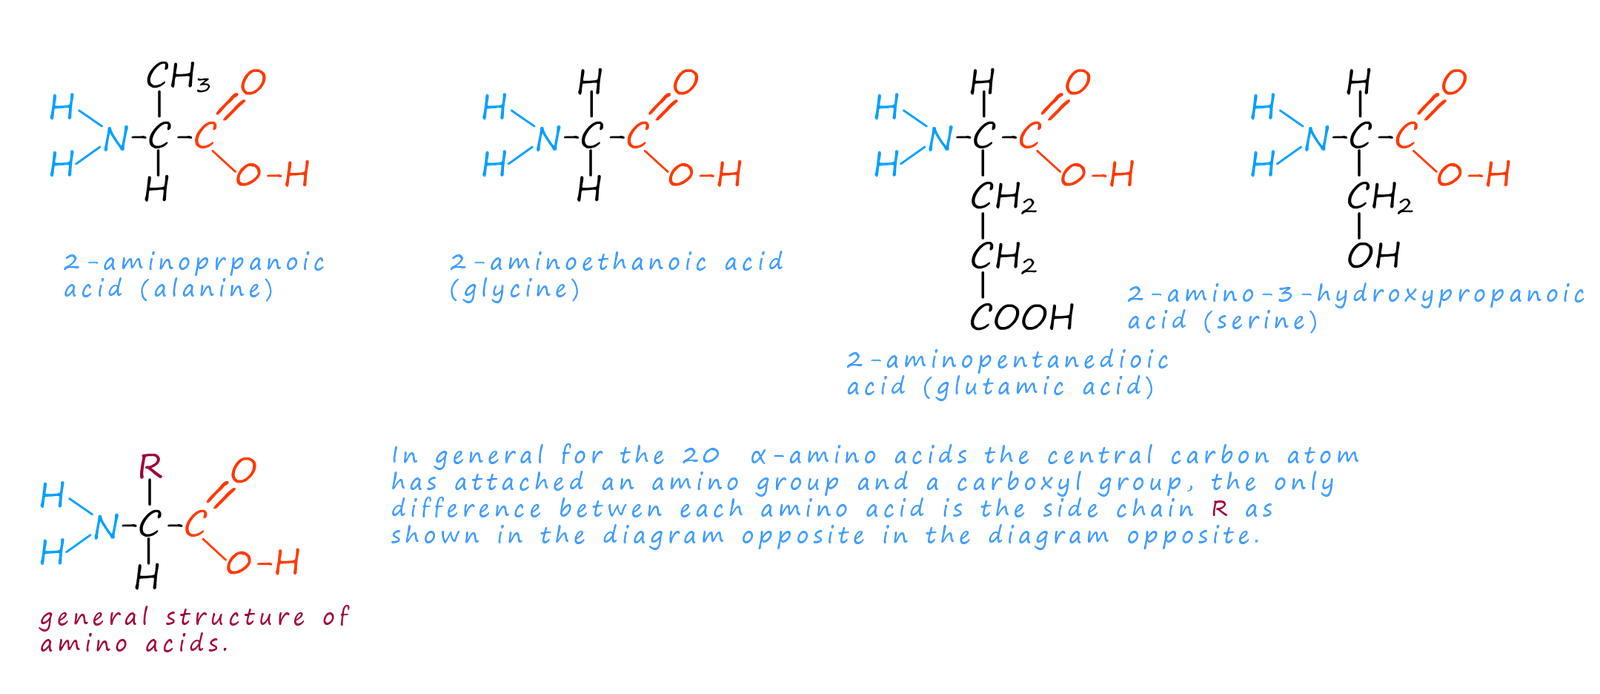 The amino acids alanine and glycine